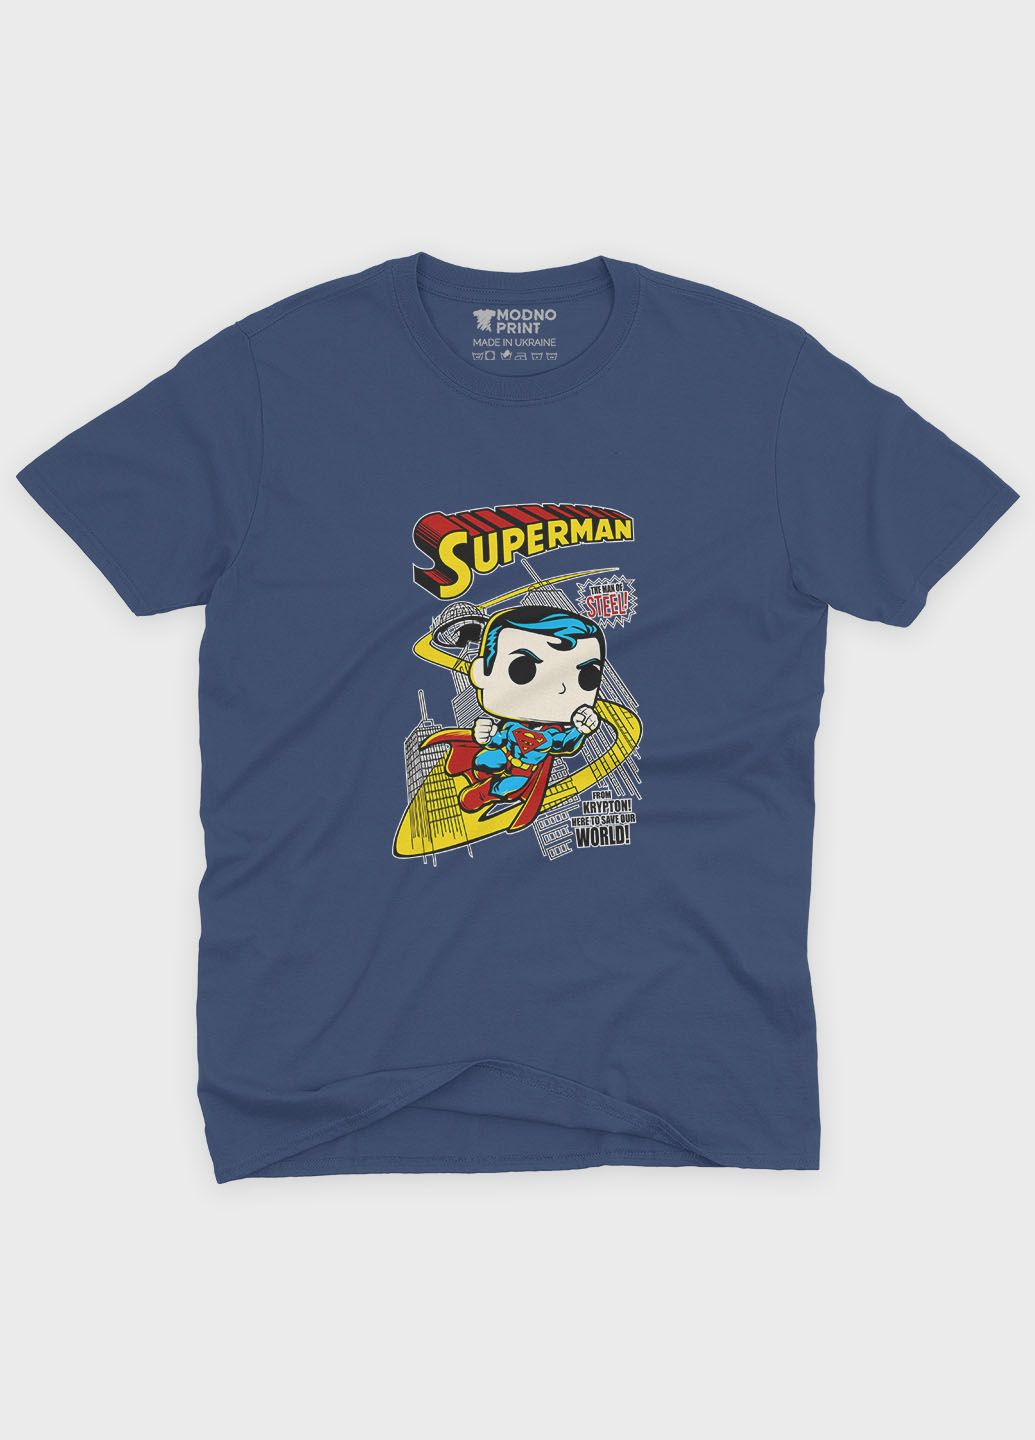 Темно-синя демісезонна футболка для хлопчика з принтом супергероя - супермен (ts001-1-nav-006-009-003-b) Modno